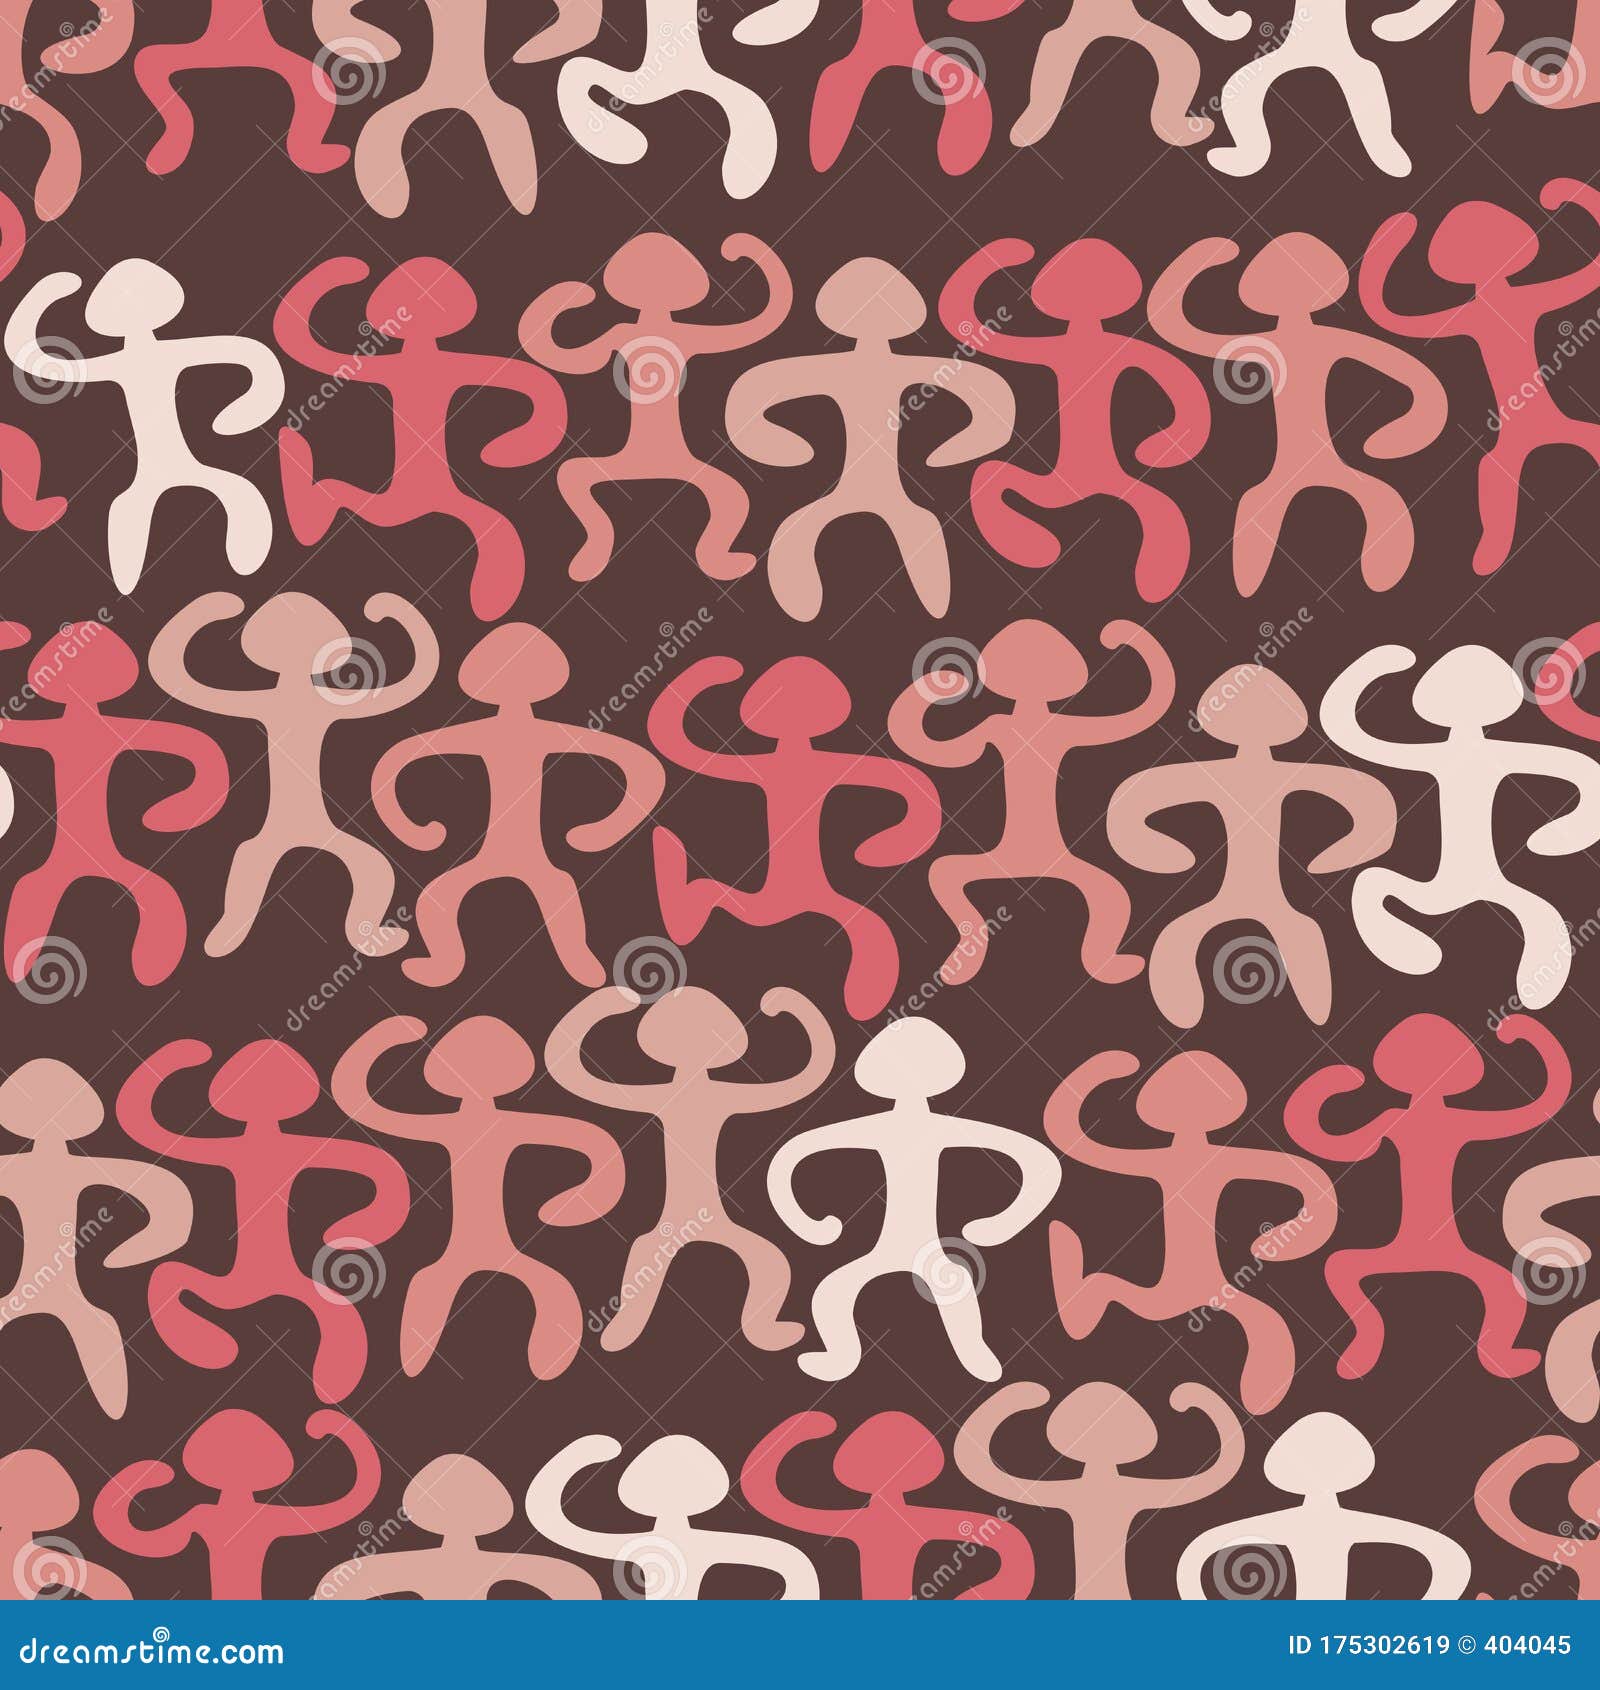 人体轮廓的无缝模式纺织品 壁纸 设计的抽象背景网站模板迷彩向量例证 插画包括有browne 方式